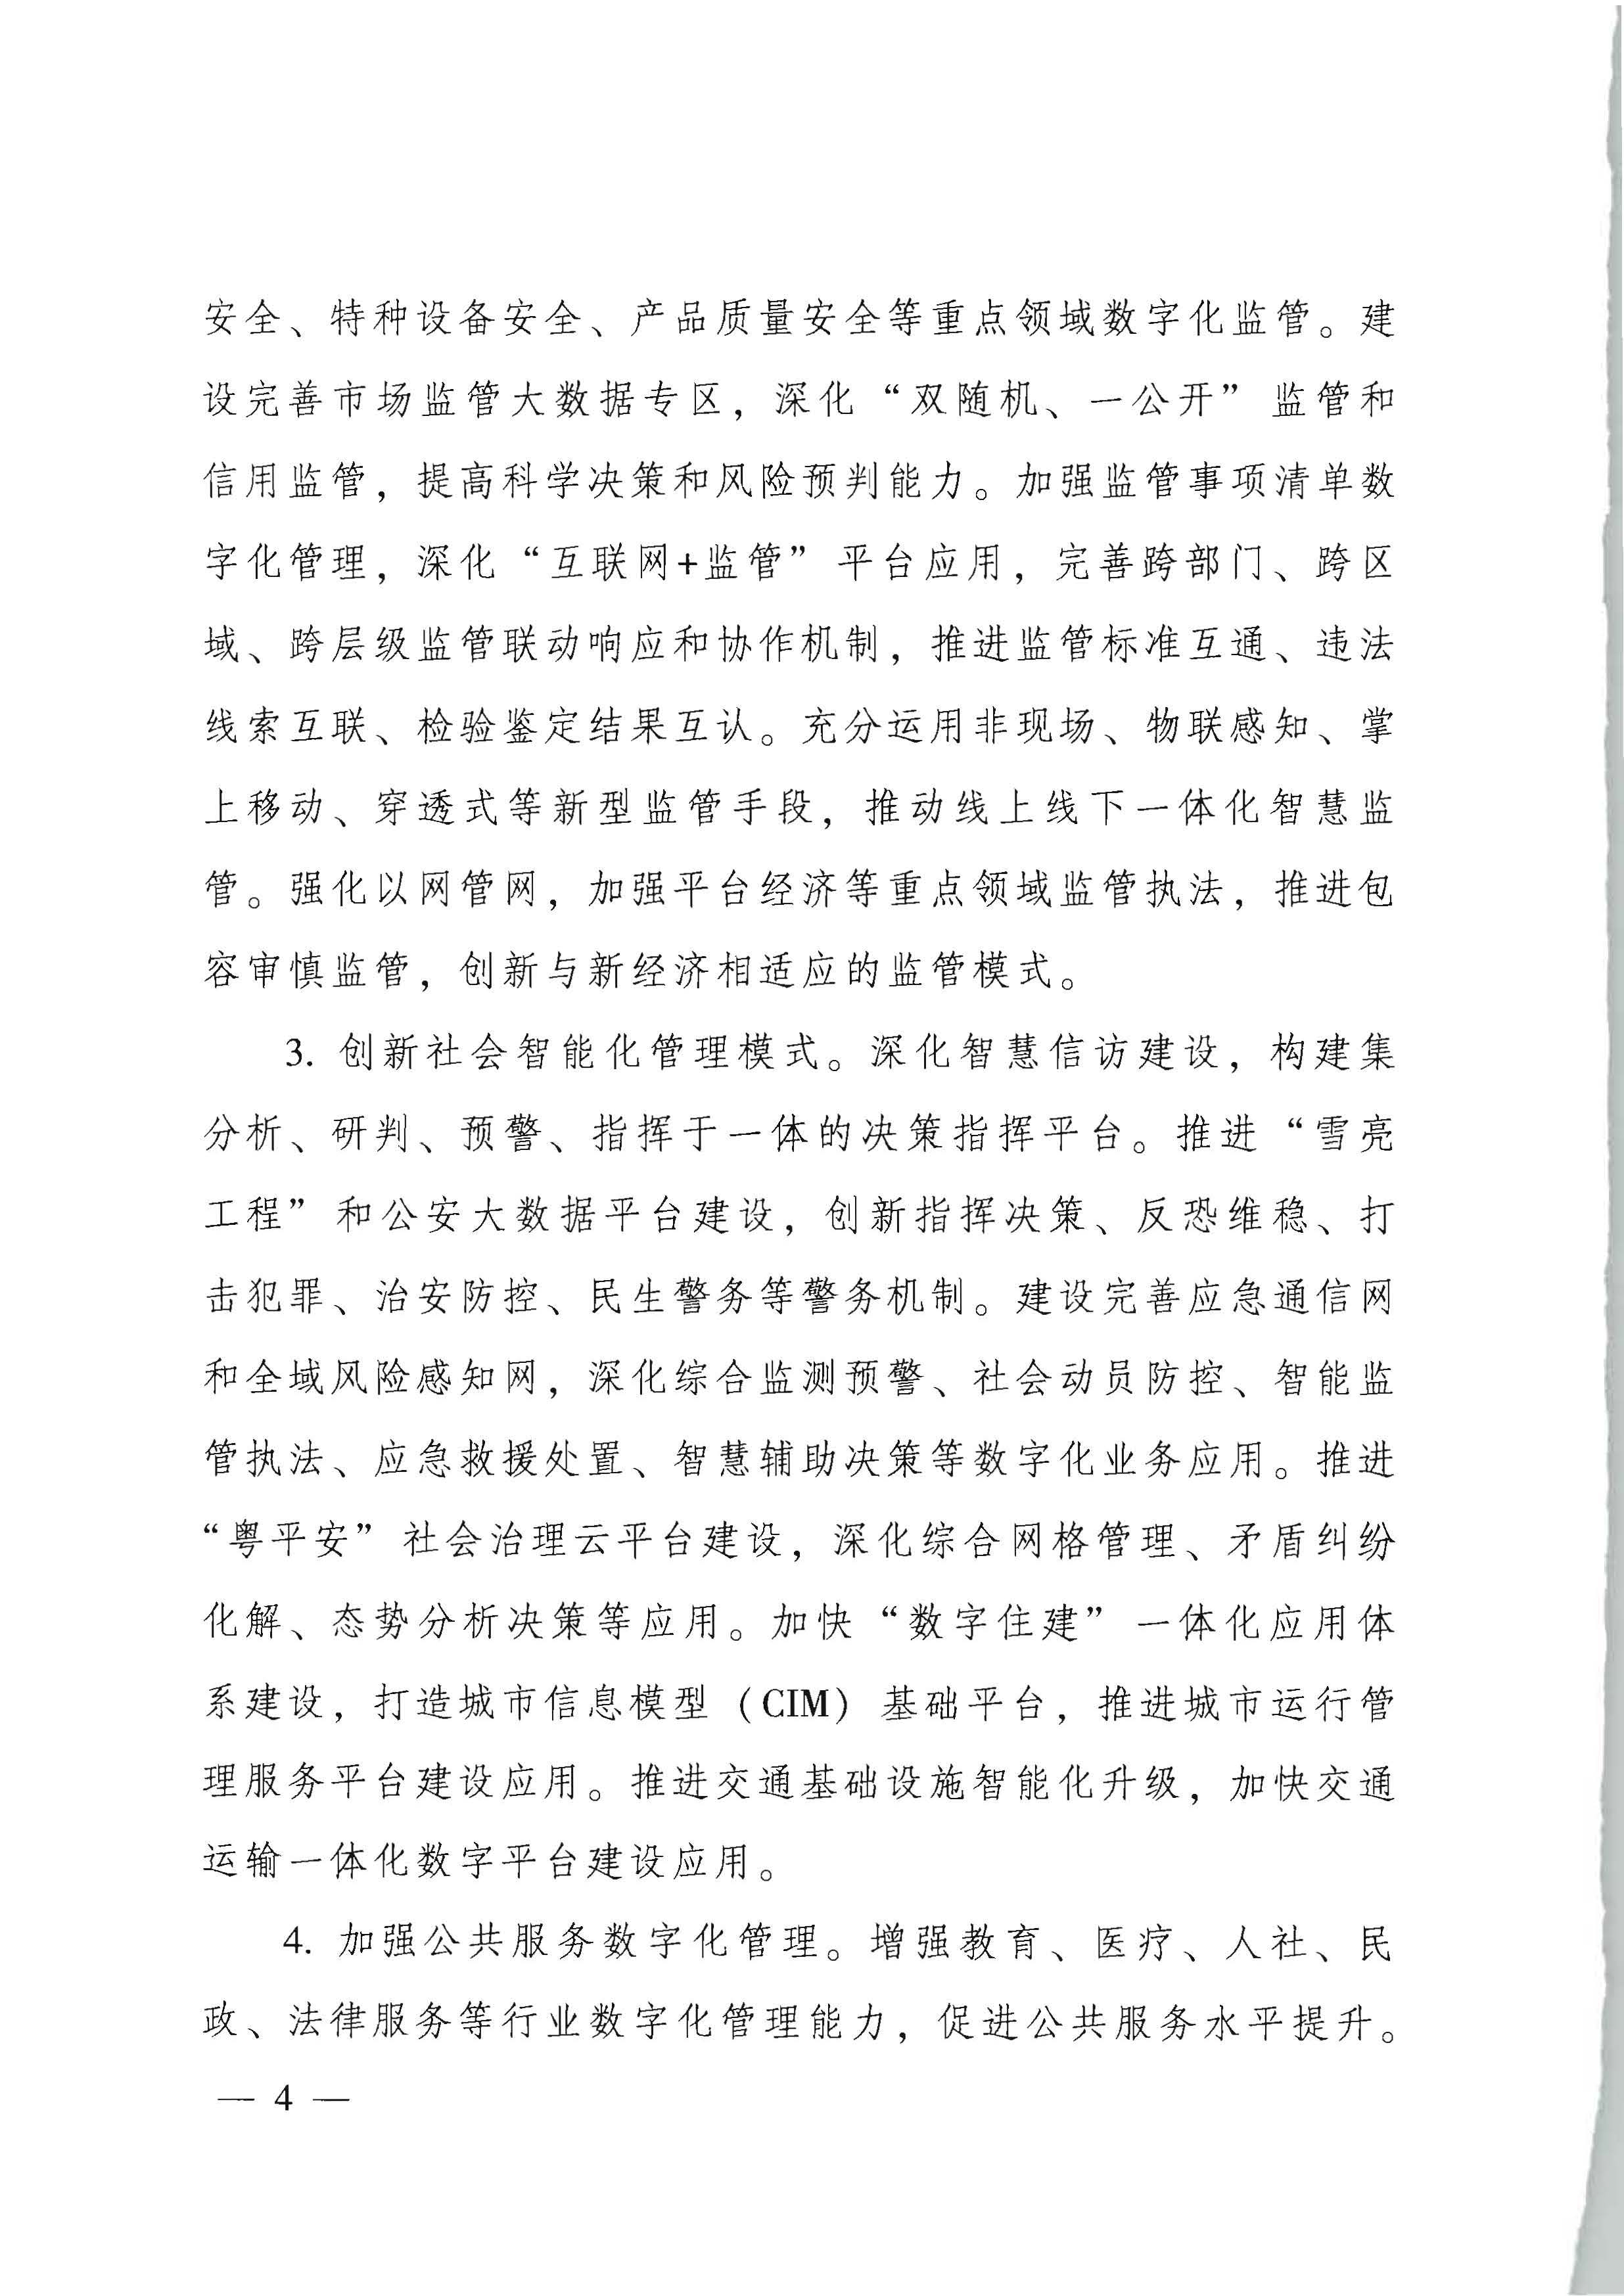 广东省人民政府关于进一步深化数字政府改革建设的实施意见_页面_04.jpg